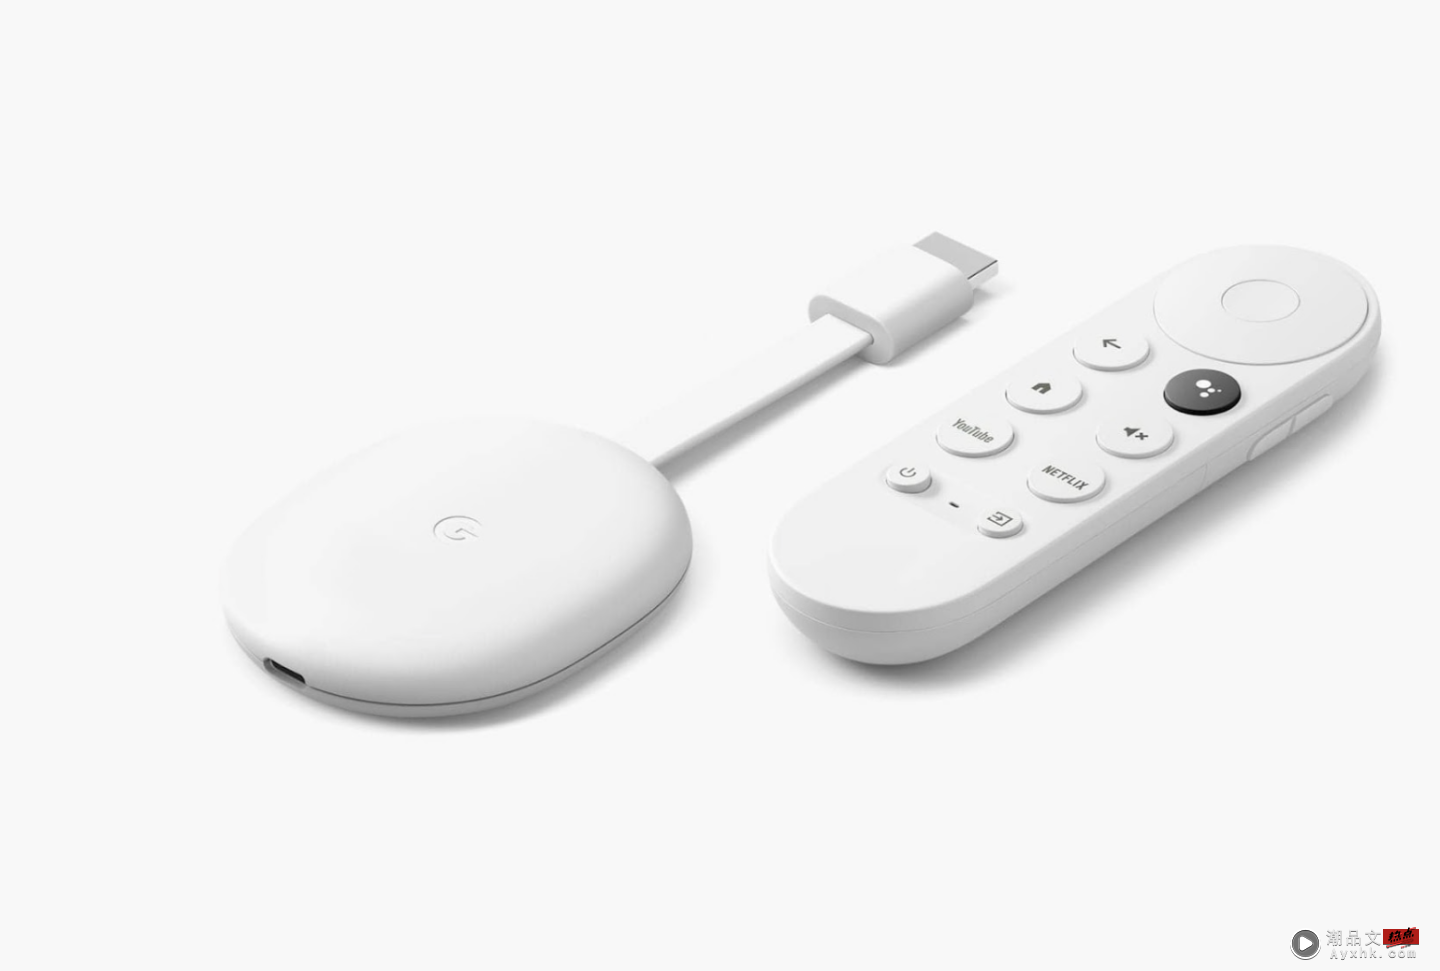 全新 Google Chromecast 正式登台！支援 Google TV 和智慧声控，售价新台币 1,999 元 数码科技 图1张